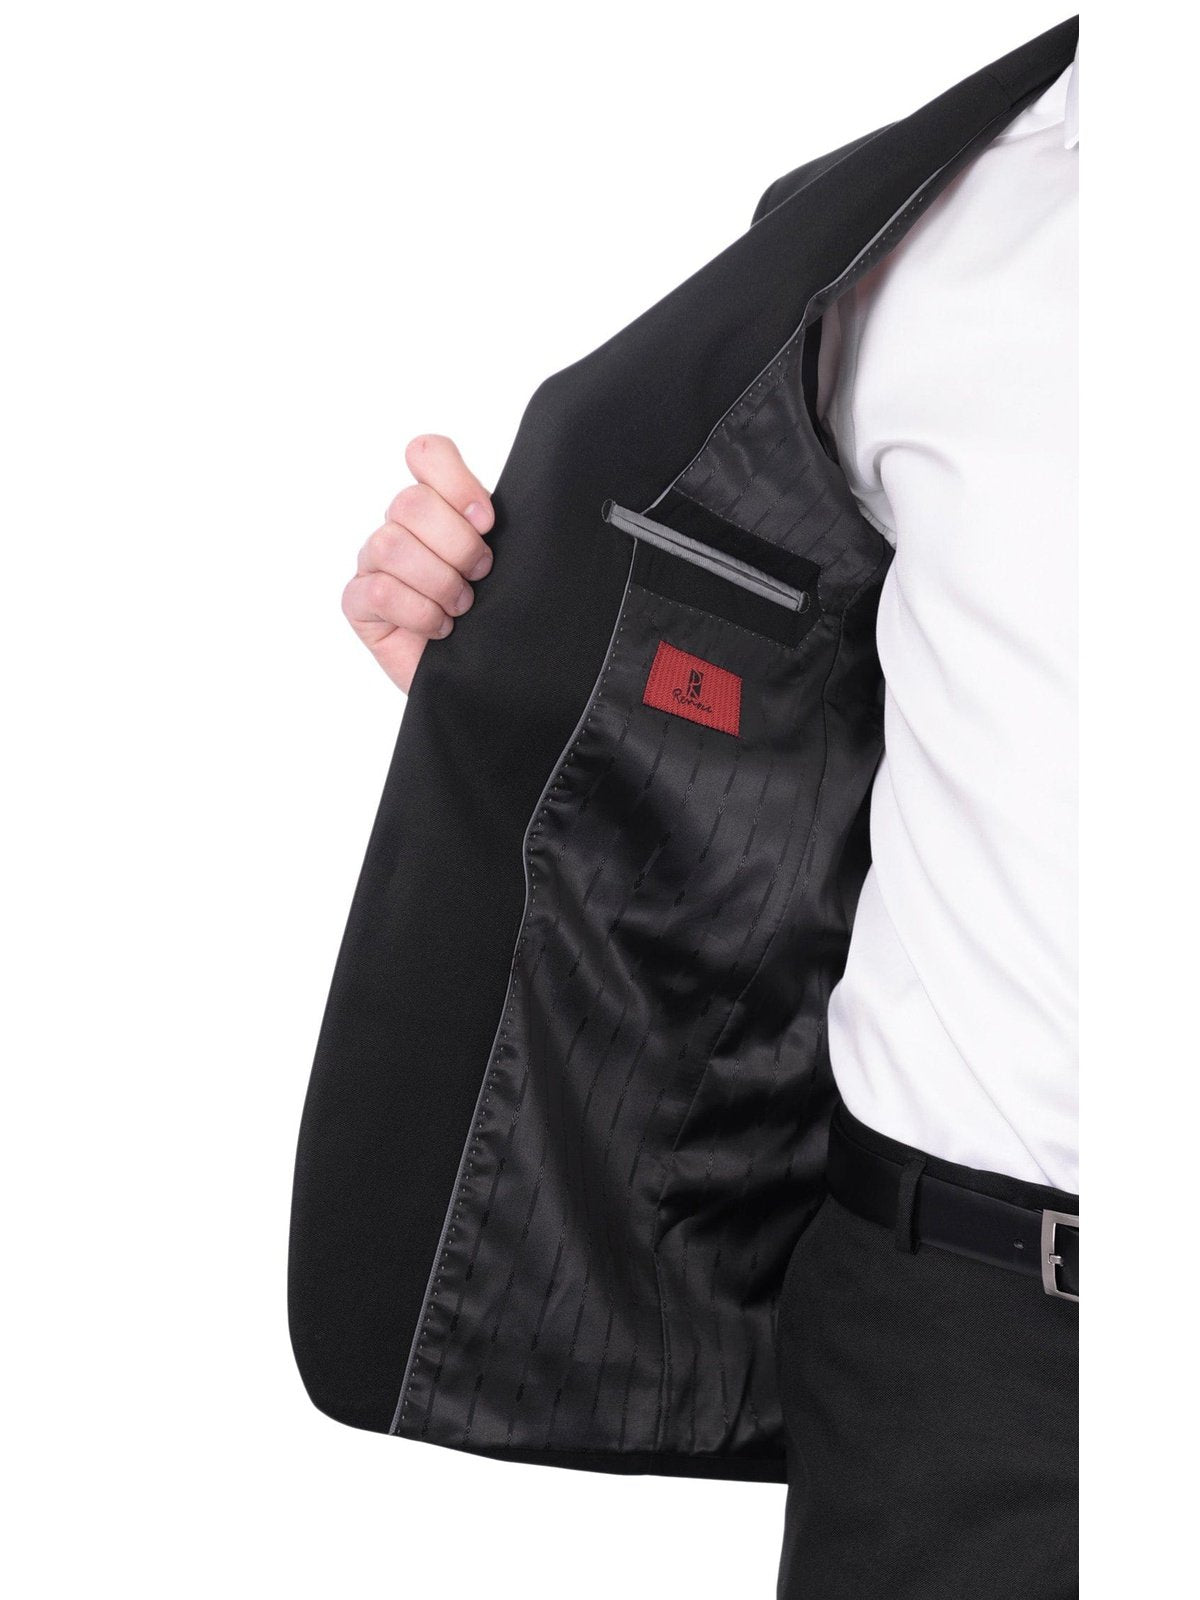 Raphael SUITS Raphael Mens Solid Black Slim Fit 2 Button Suit